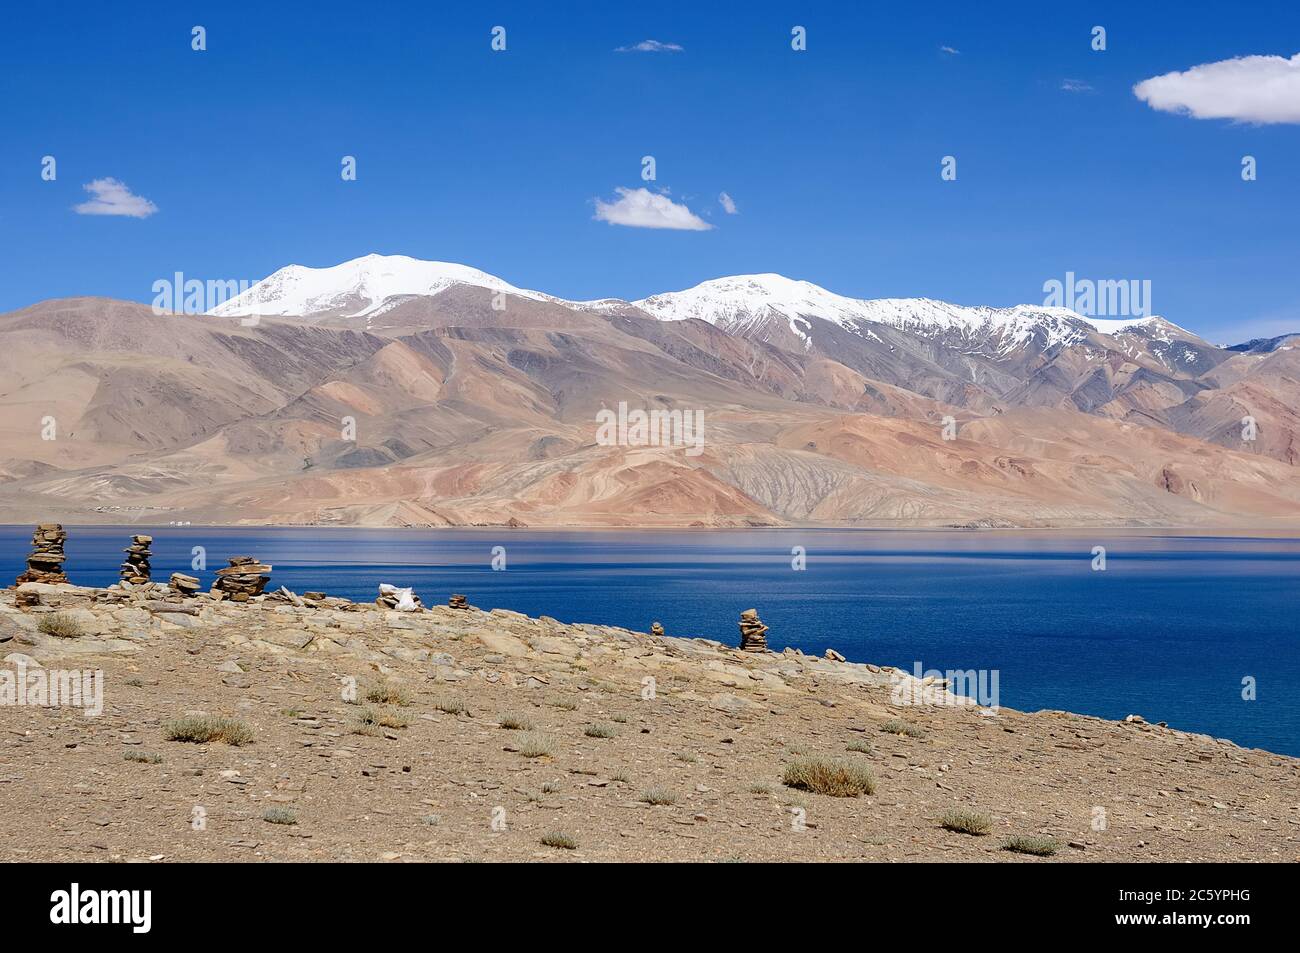 View on Tso Moriri lake, Leh District, India. Stock Photo